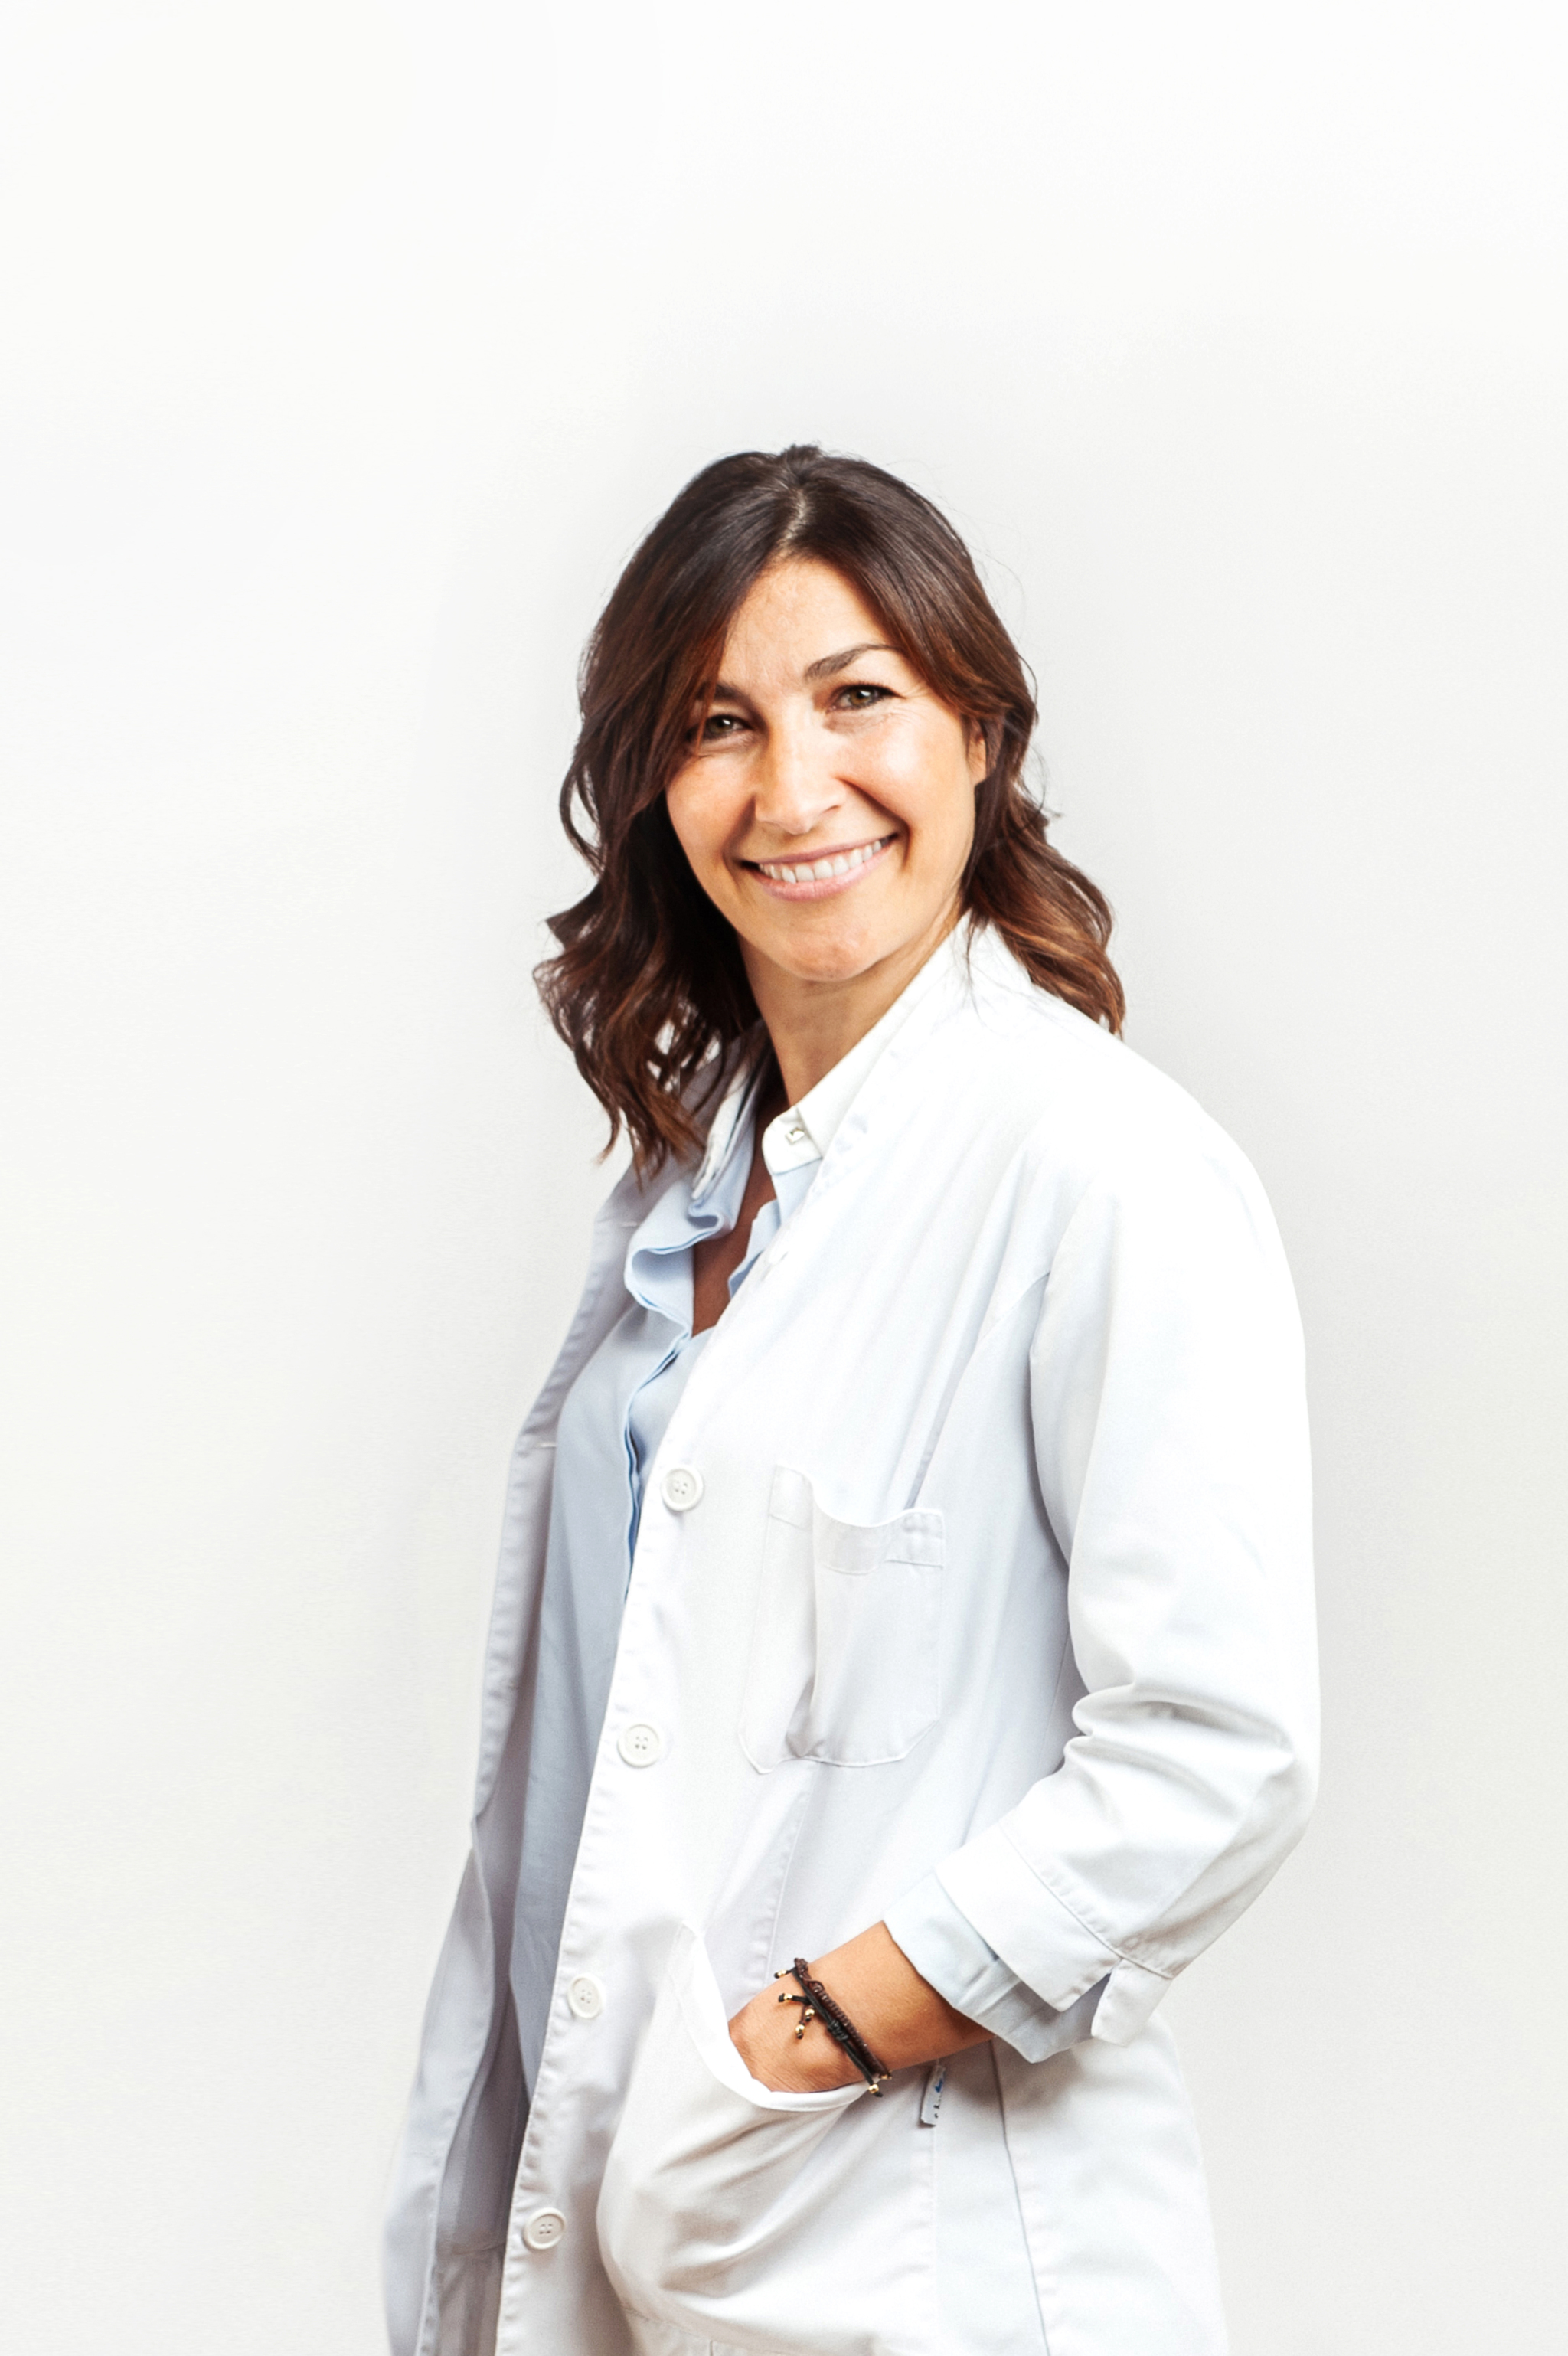 La Dra. Nuria Roure, psicóloga especialista en trastornos del sueño y autora del libro "¡Por fin duermo!" (Editorial Vergara).